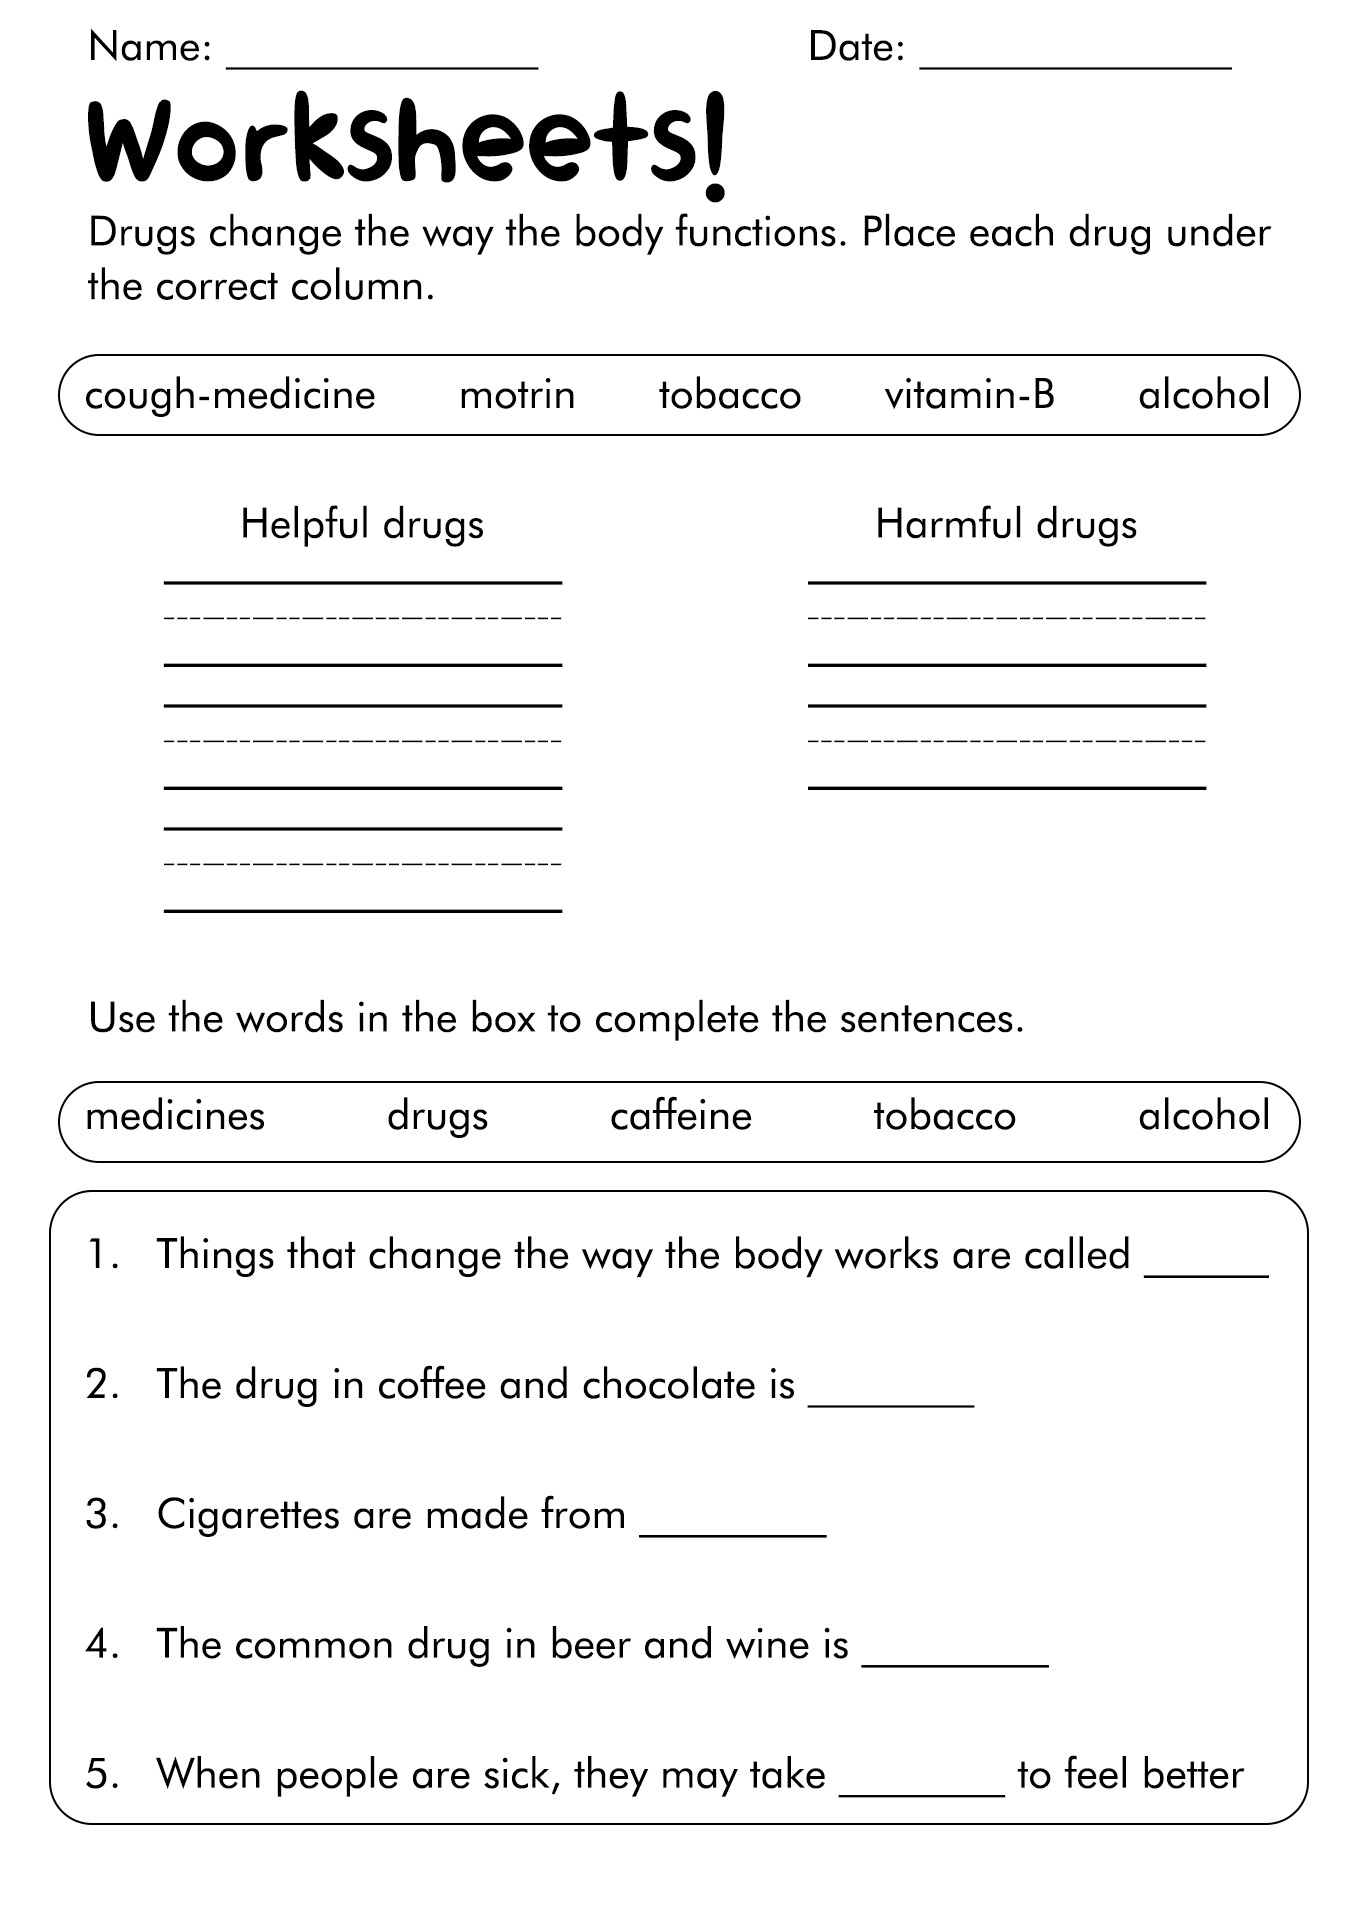 Drug and Substance Abuse Worksheets Image